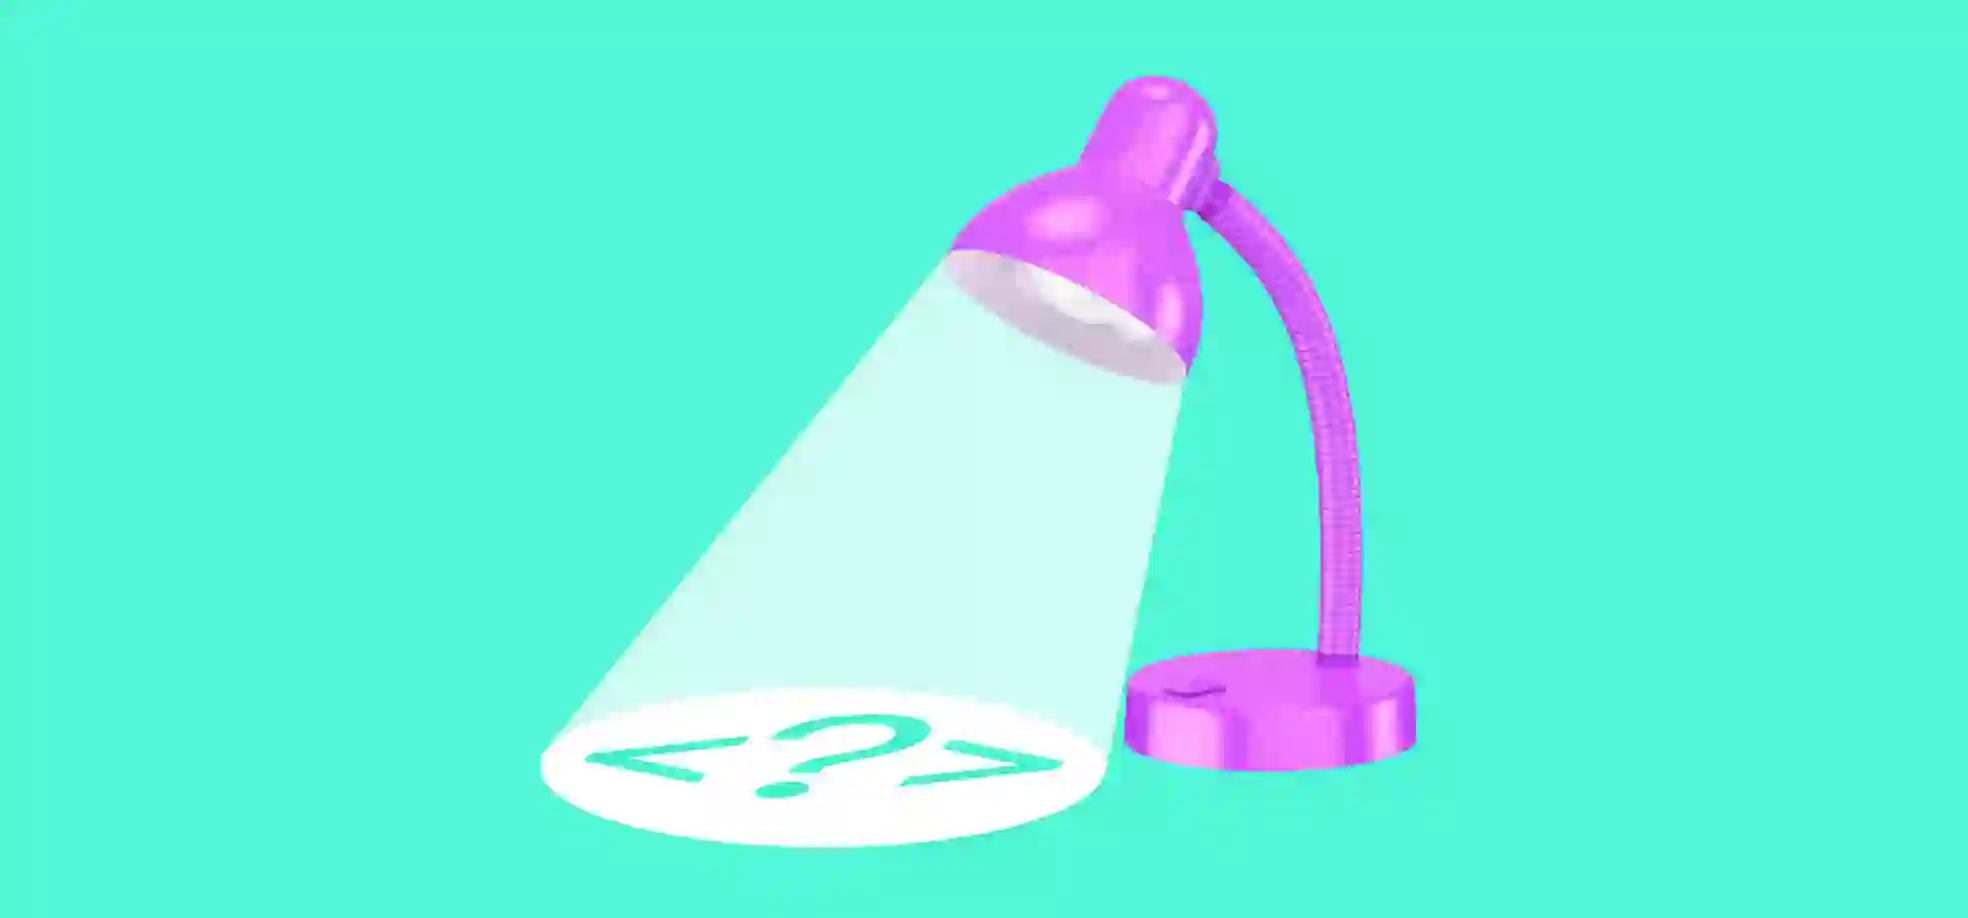 lámpara púrpura sobre fondo verde